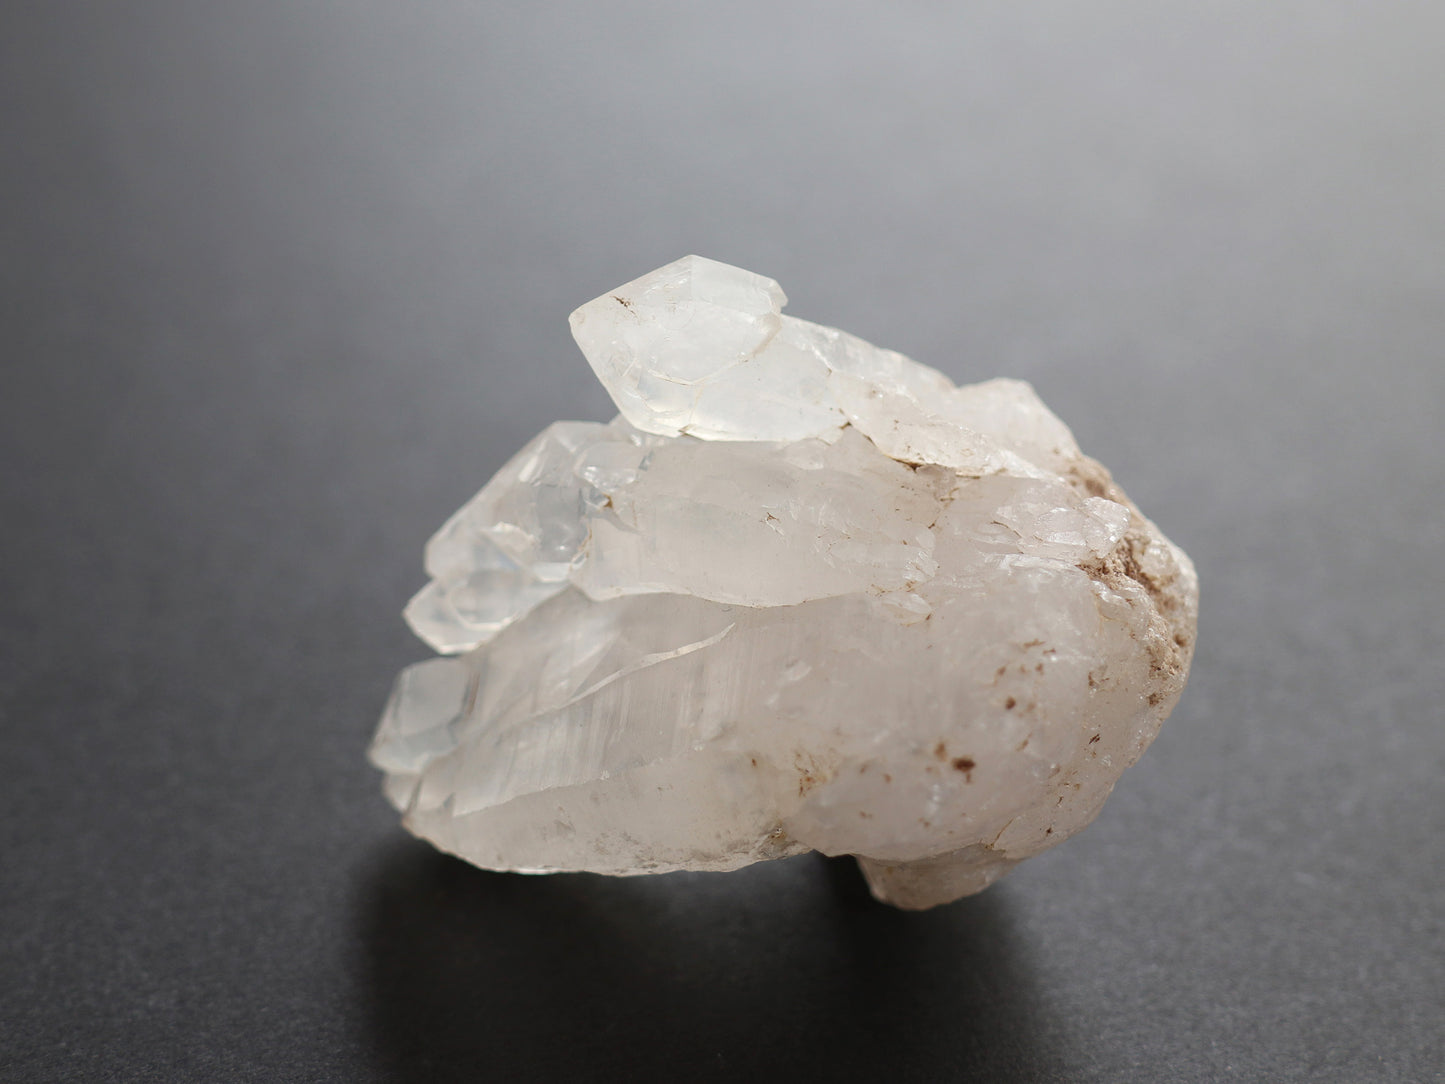 セプター、レインボークリスタル、ガネーシュヒマール産ヒマラヤ水晶原石PN:GG-122